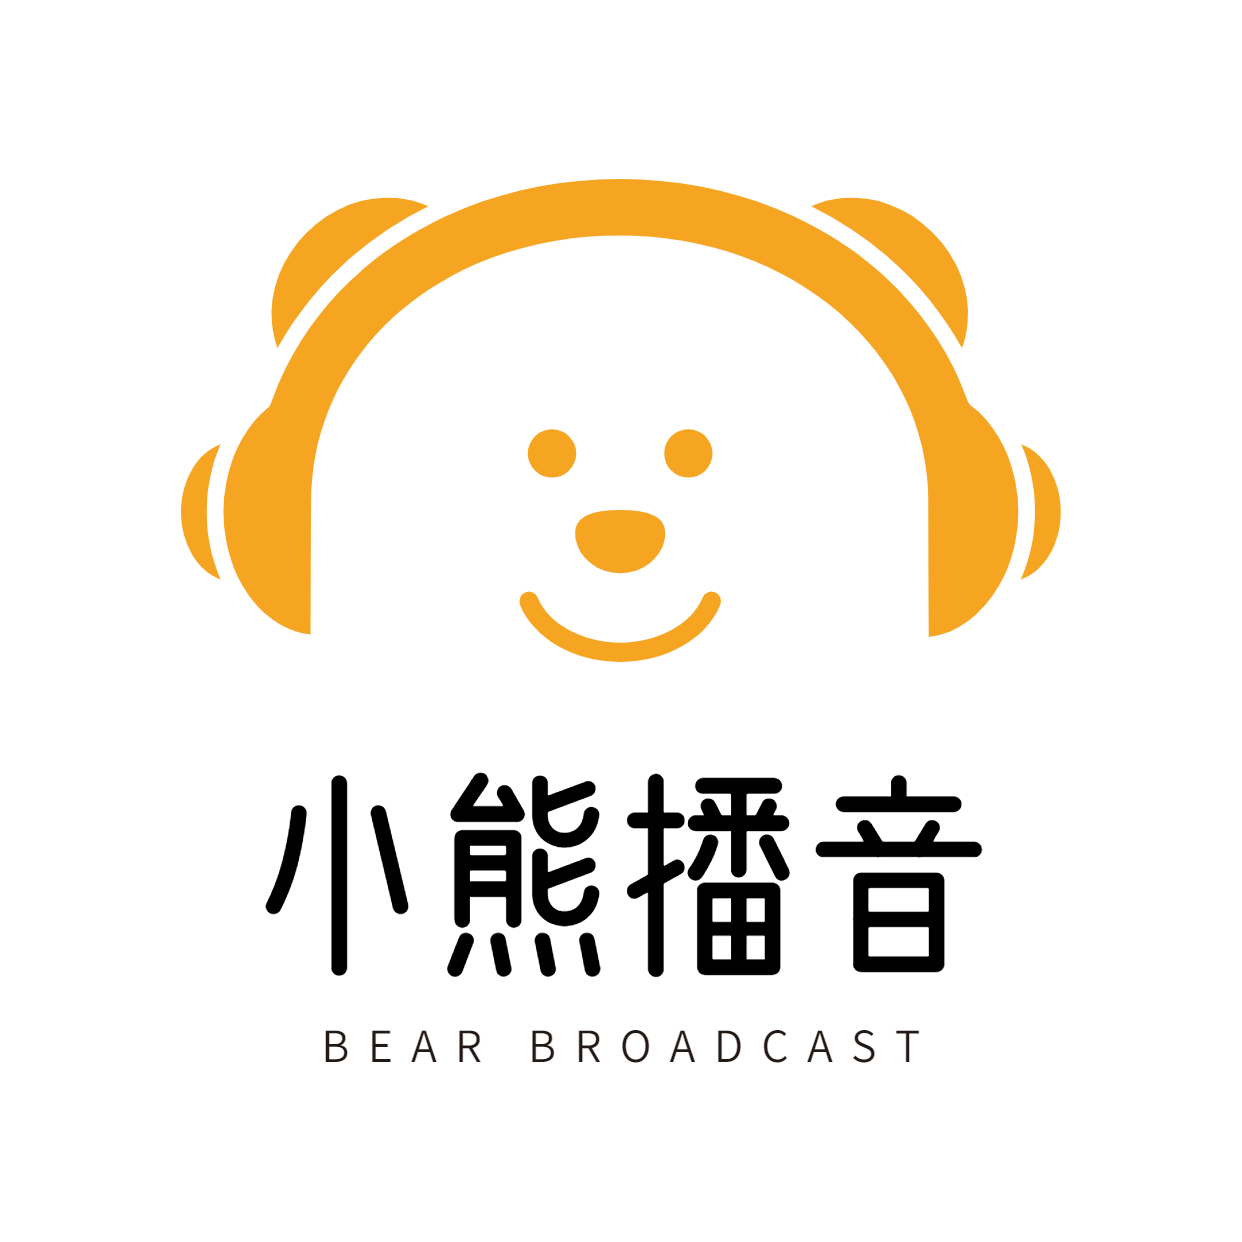 教育培训机构播音培训招牌logo